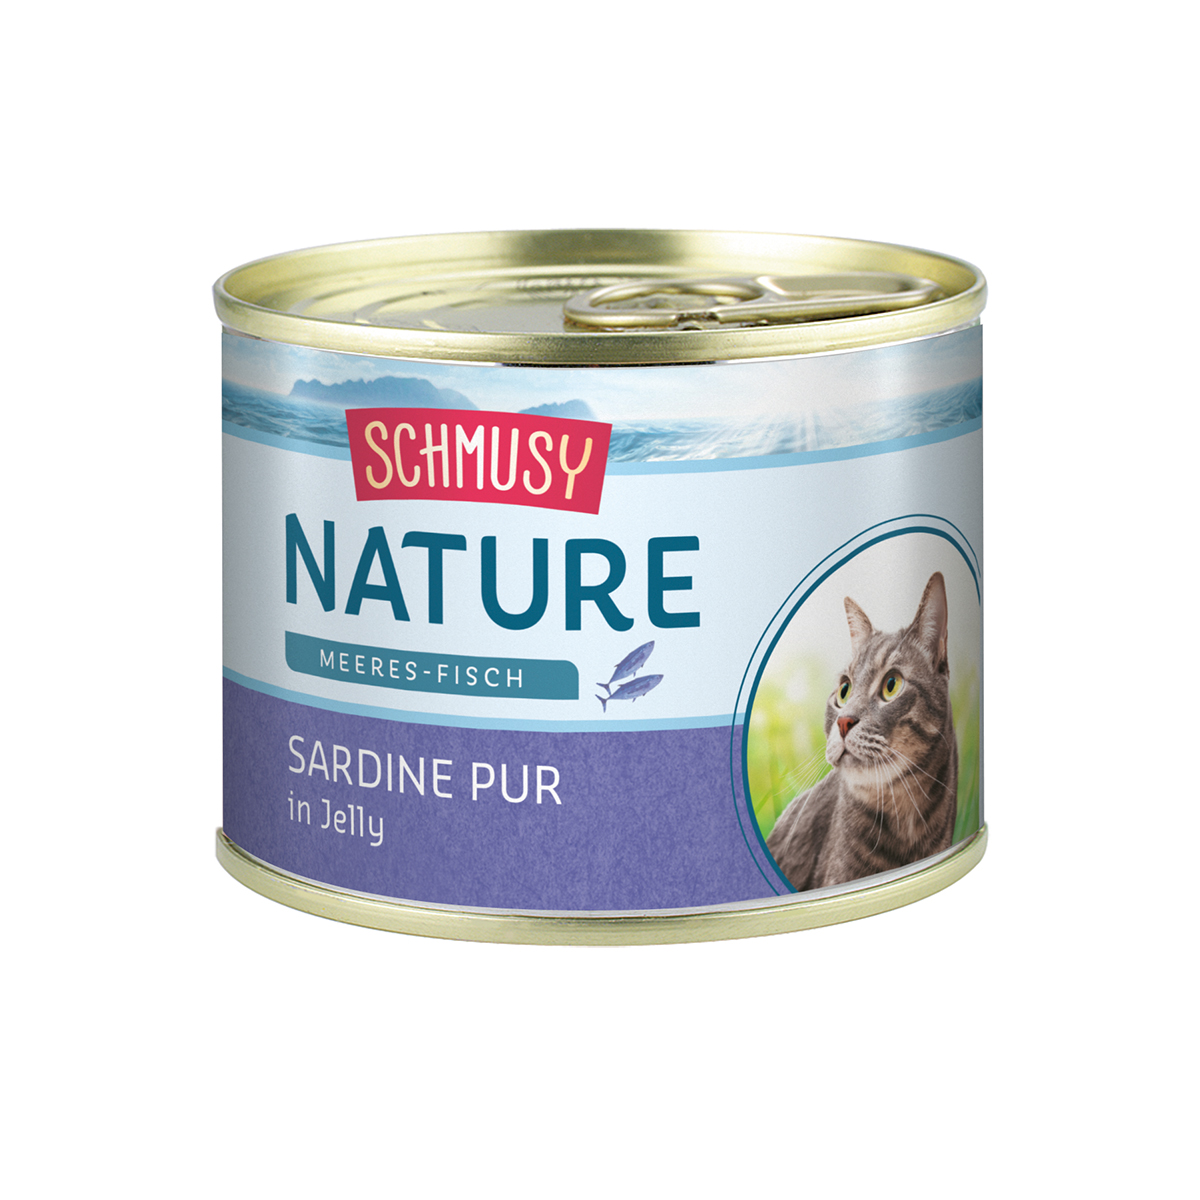 Schmusy Katzenfutter Nature Meeres Fisch Sardine pur